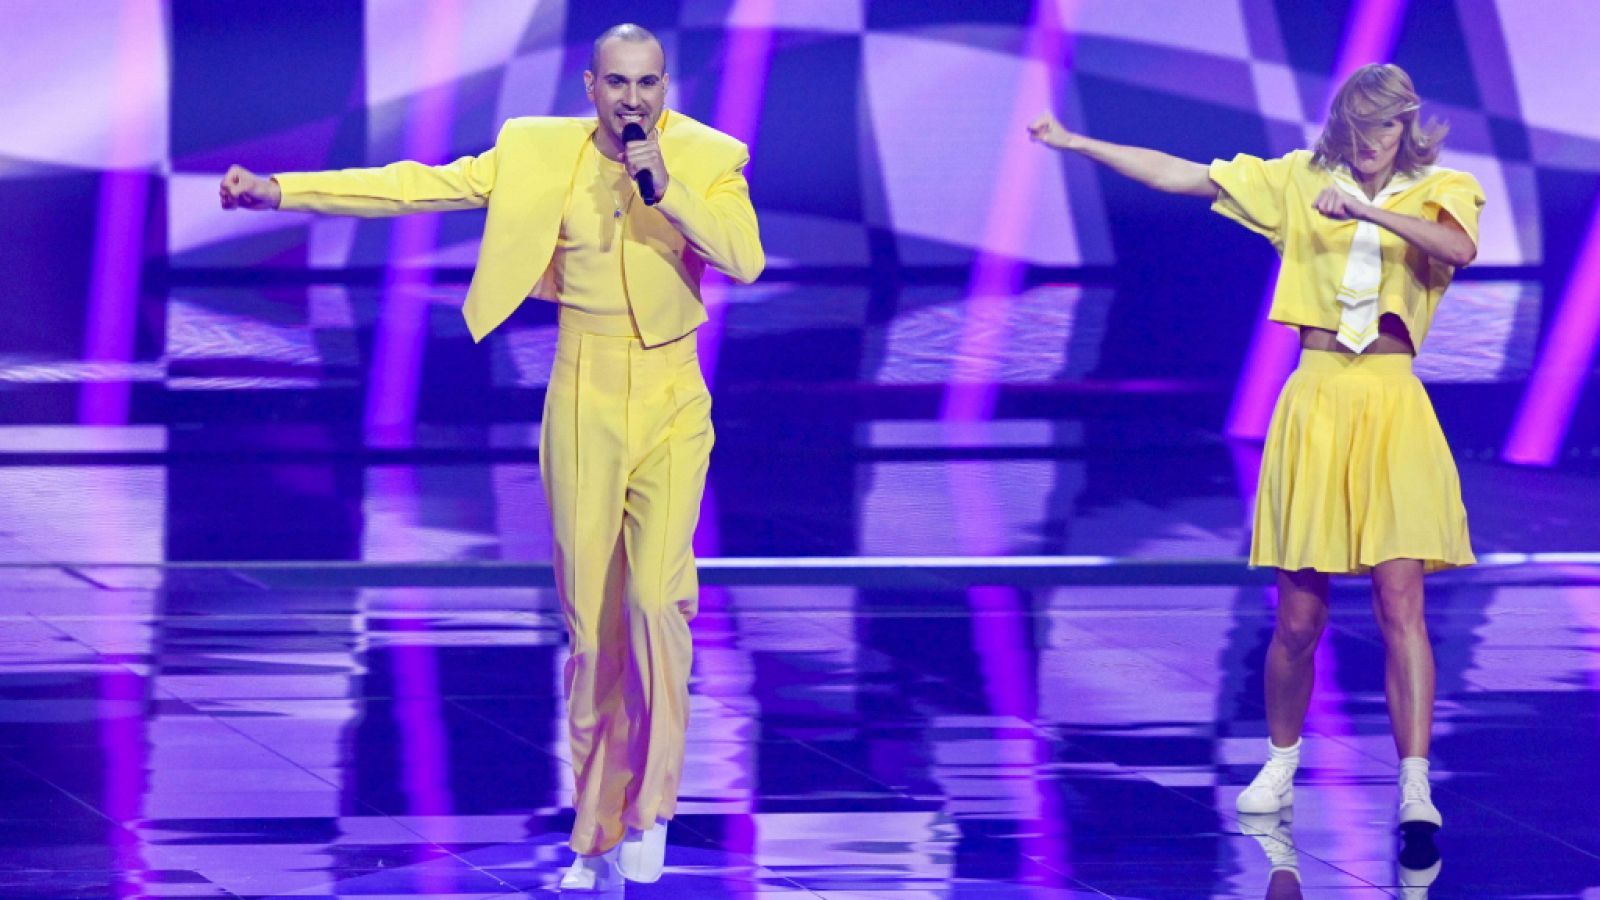 Eurovisión 2021 - Lituania: The Roop canta "Discoteque" en la primera semifinal